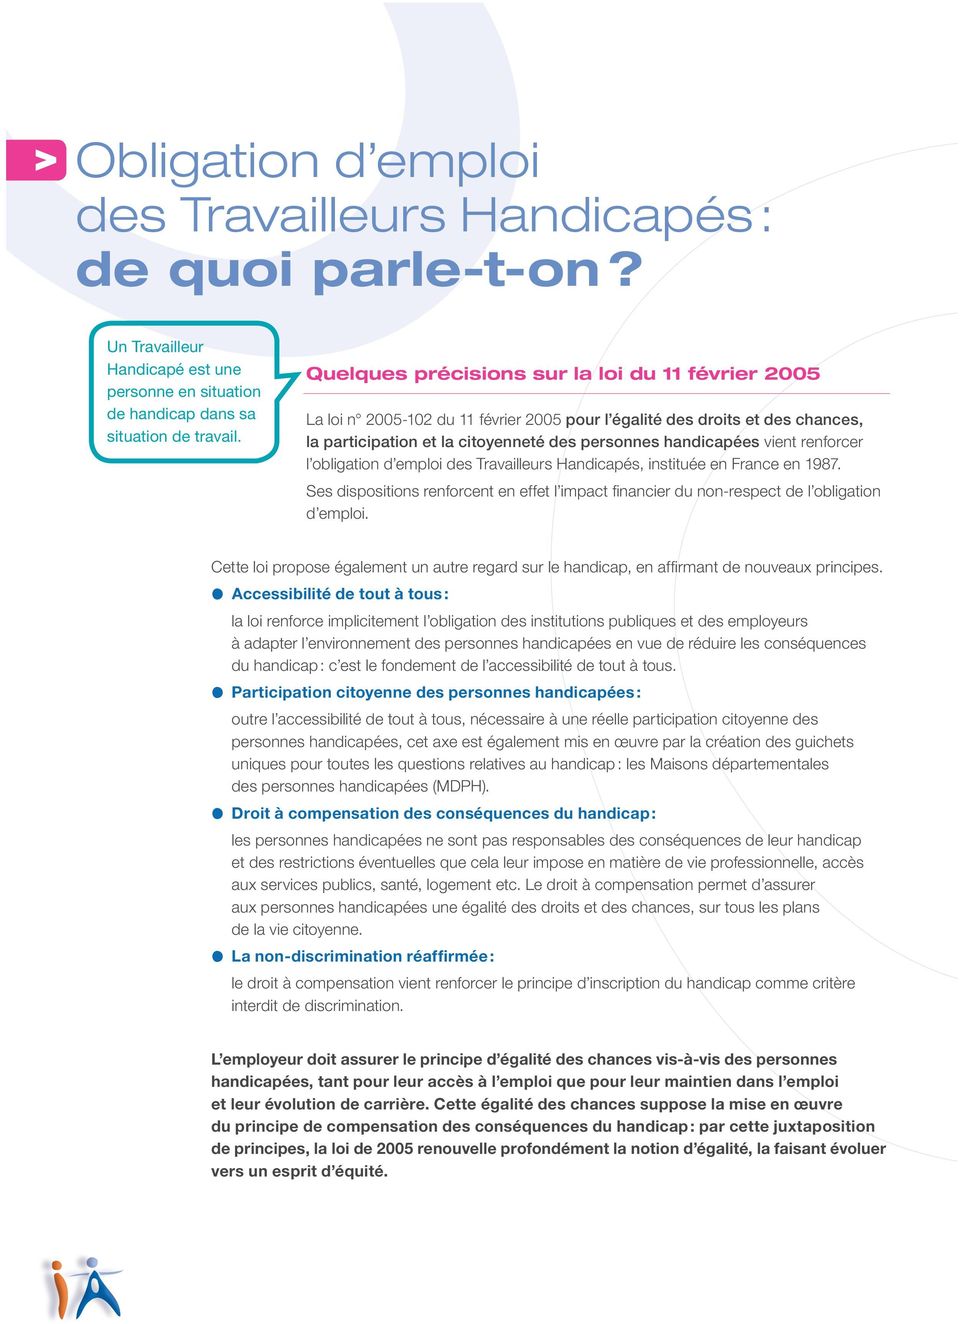 renforcer l obligation d emploi des Travailleurs Handicapés, instituée en France en 1987. Ses dispositions renforcent en effet l impact financier du non-respect de l obligation d emploi.